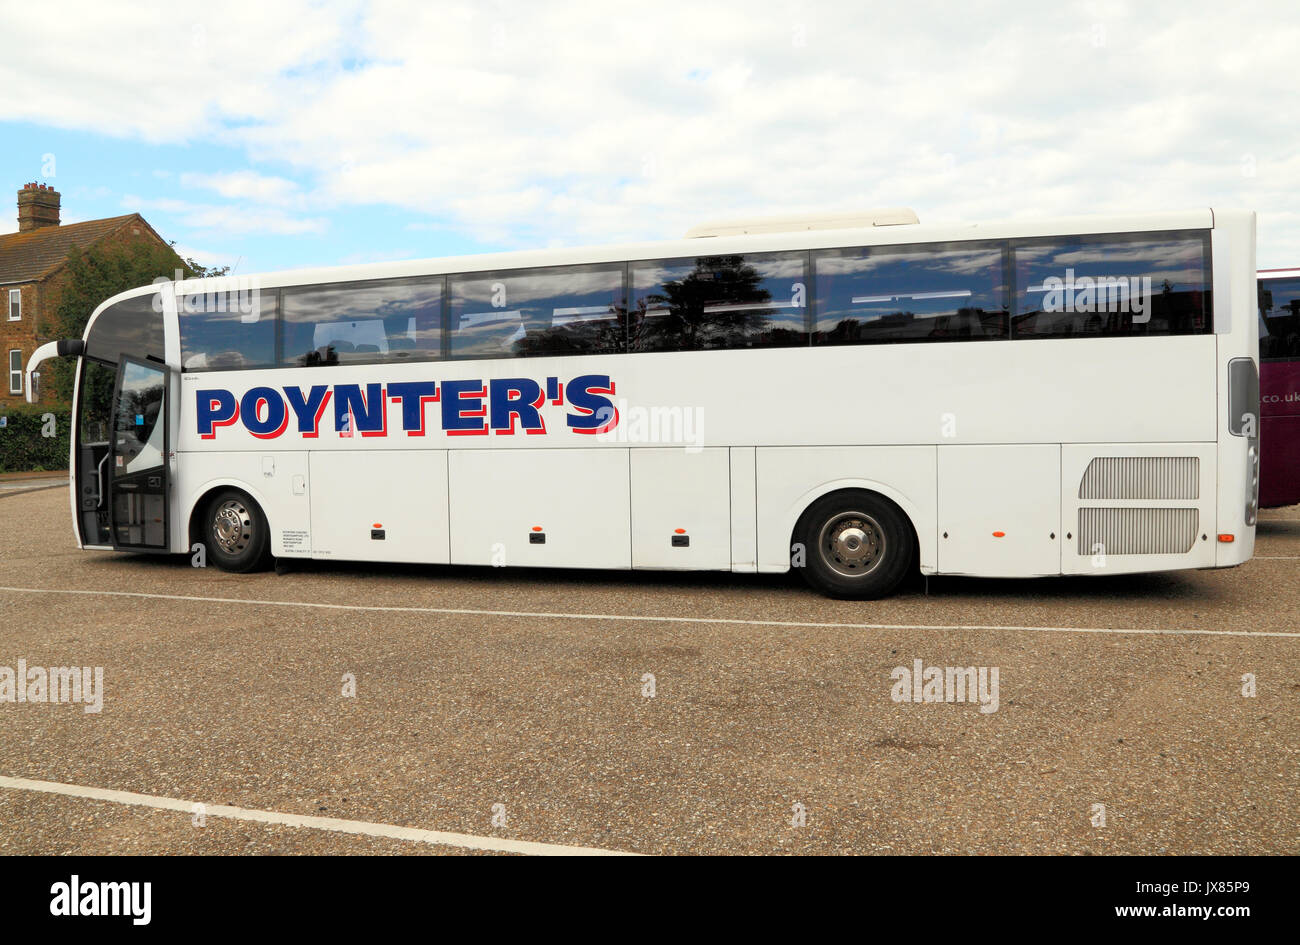 Poynters Coaches, Trainer, Tagesausflüge, Ausflüge, Ausflug, Ausflüge, Reisen, Verkehr, England, Großbritannien Stockfoto